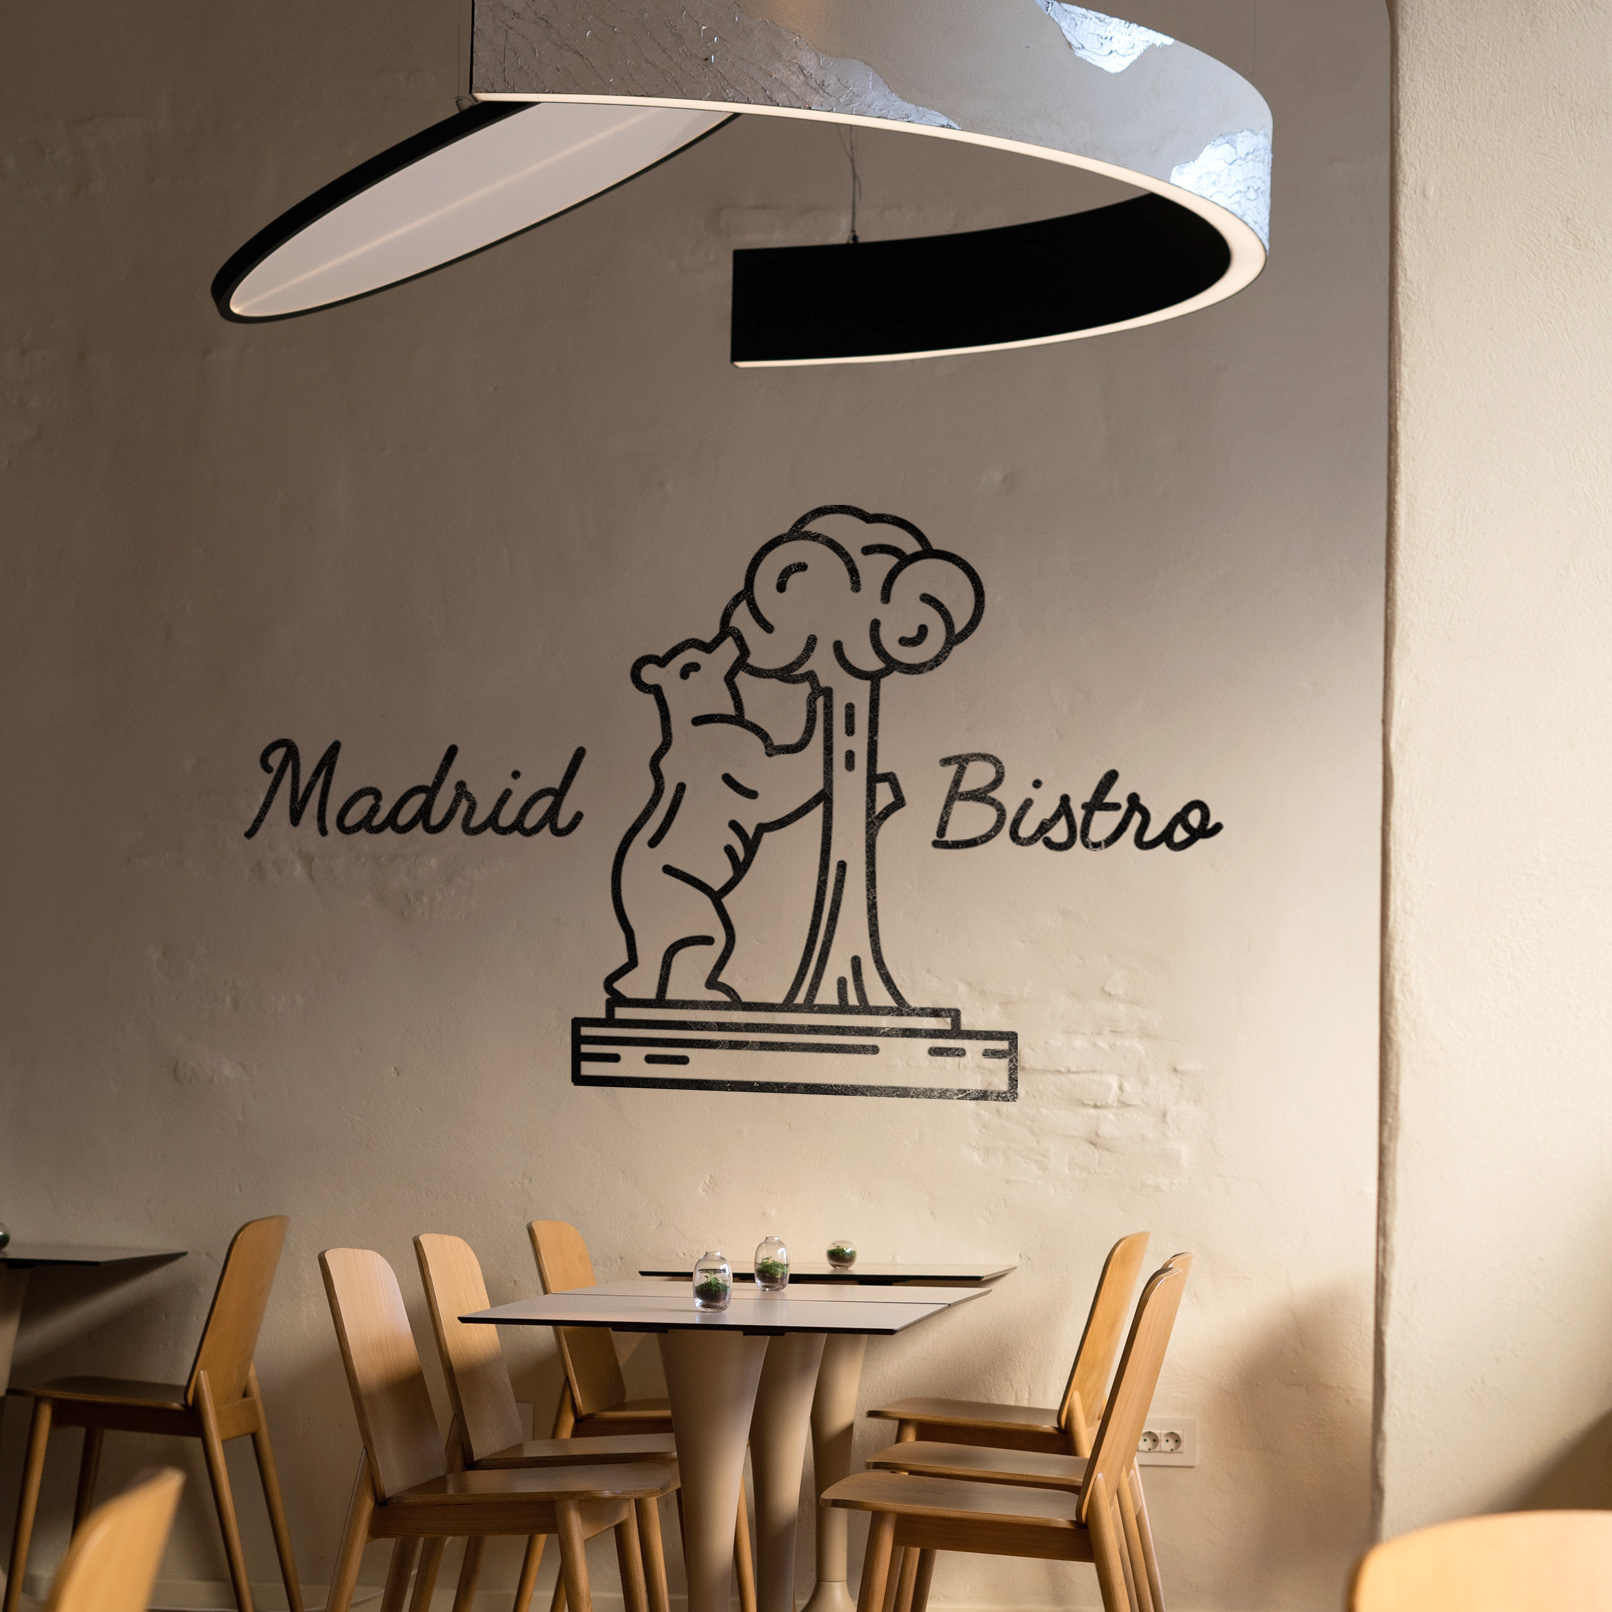 Icon des Wahrzeichens des Madrider Bären an einer Wand